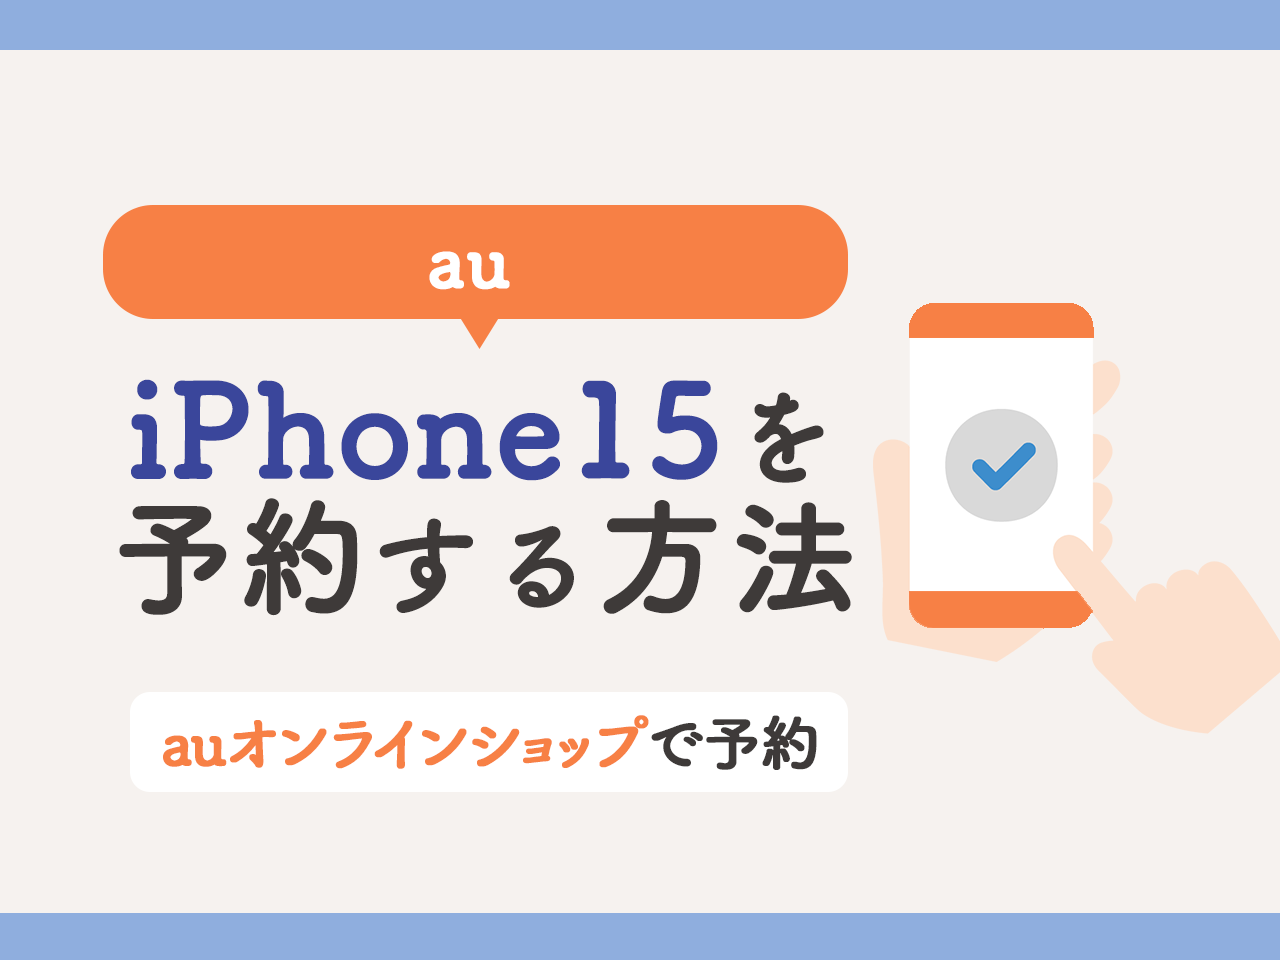 auでiPhone15を予約する方法